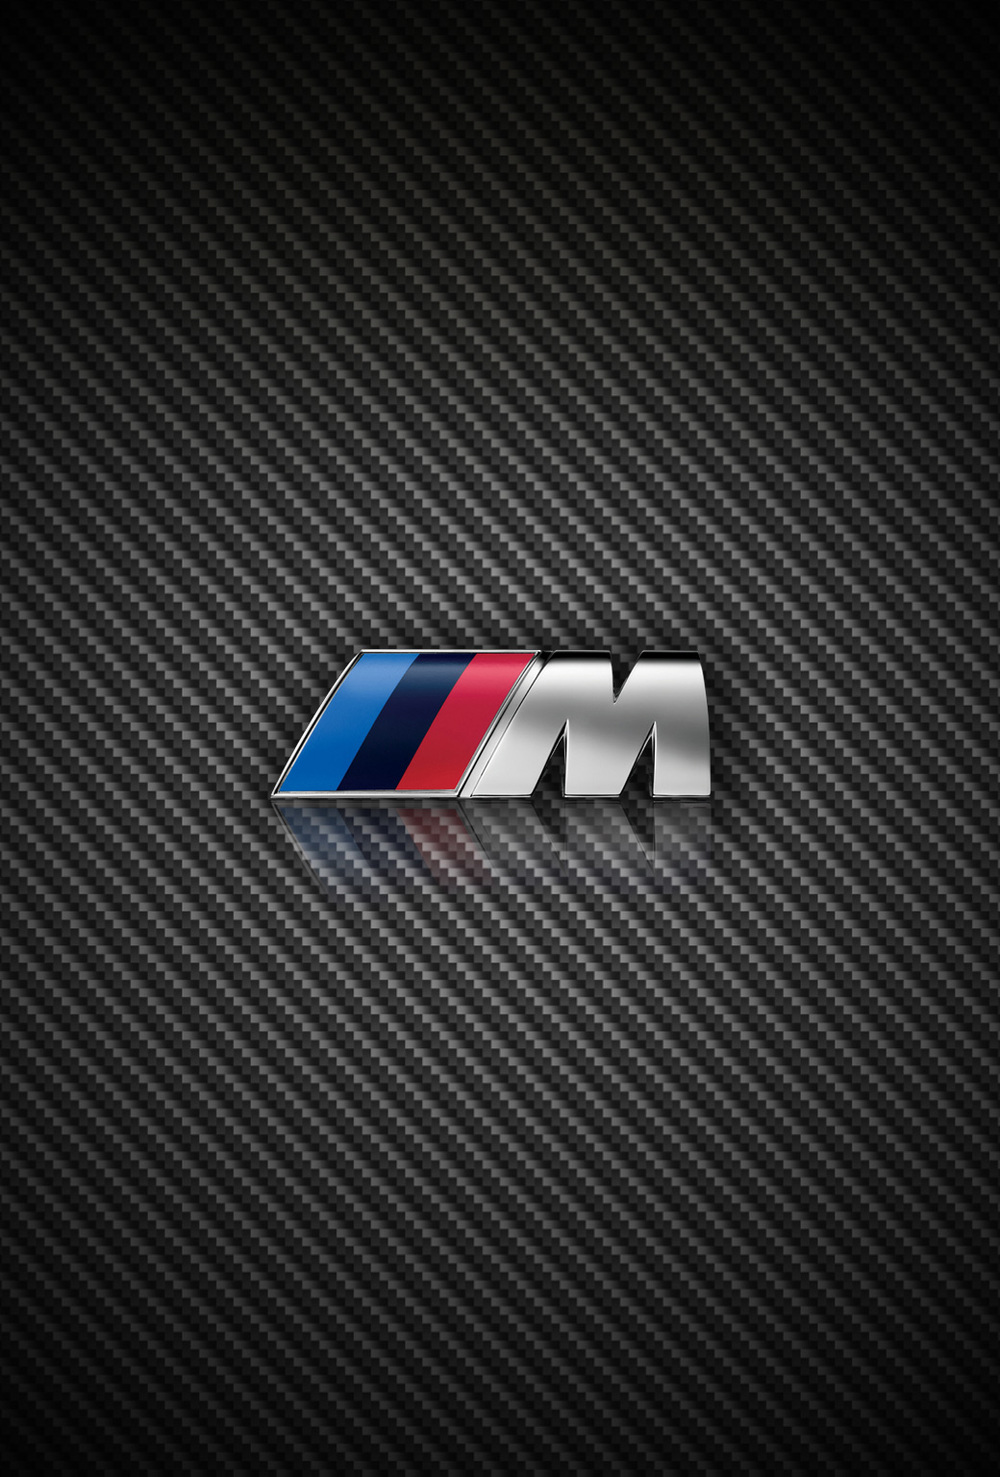 Bmw Logo Iphone Wallpaper - image #353